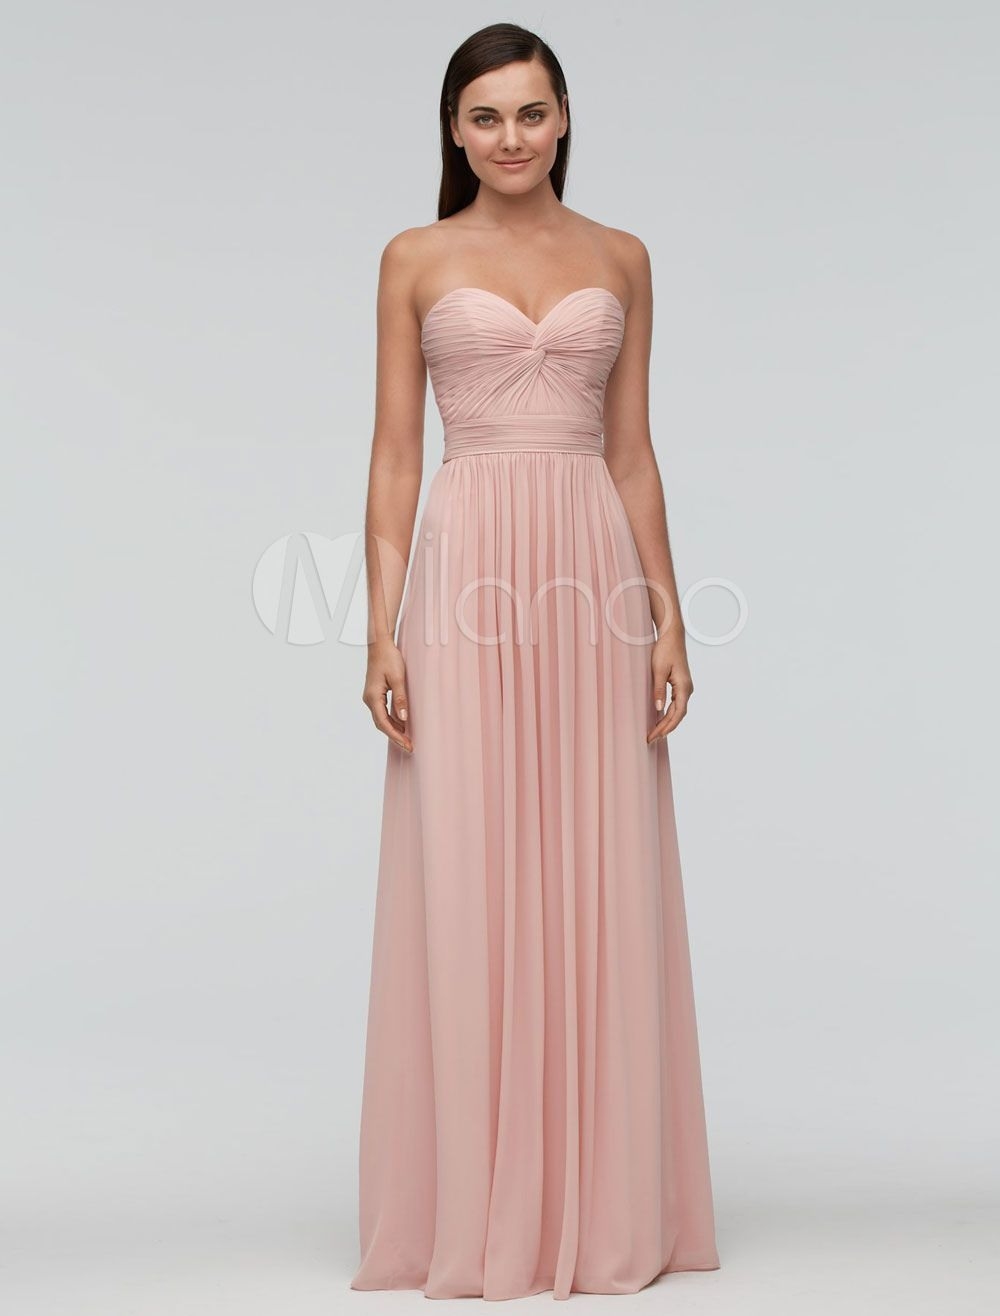 Luxurius Kleid Für Hochzeit Rosa Vertrieb17 Einfach Kleid Für Hochzeit Rosa Design